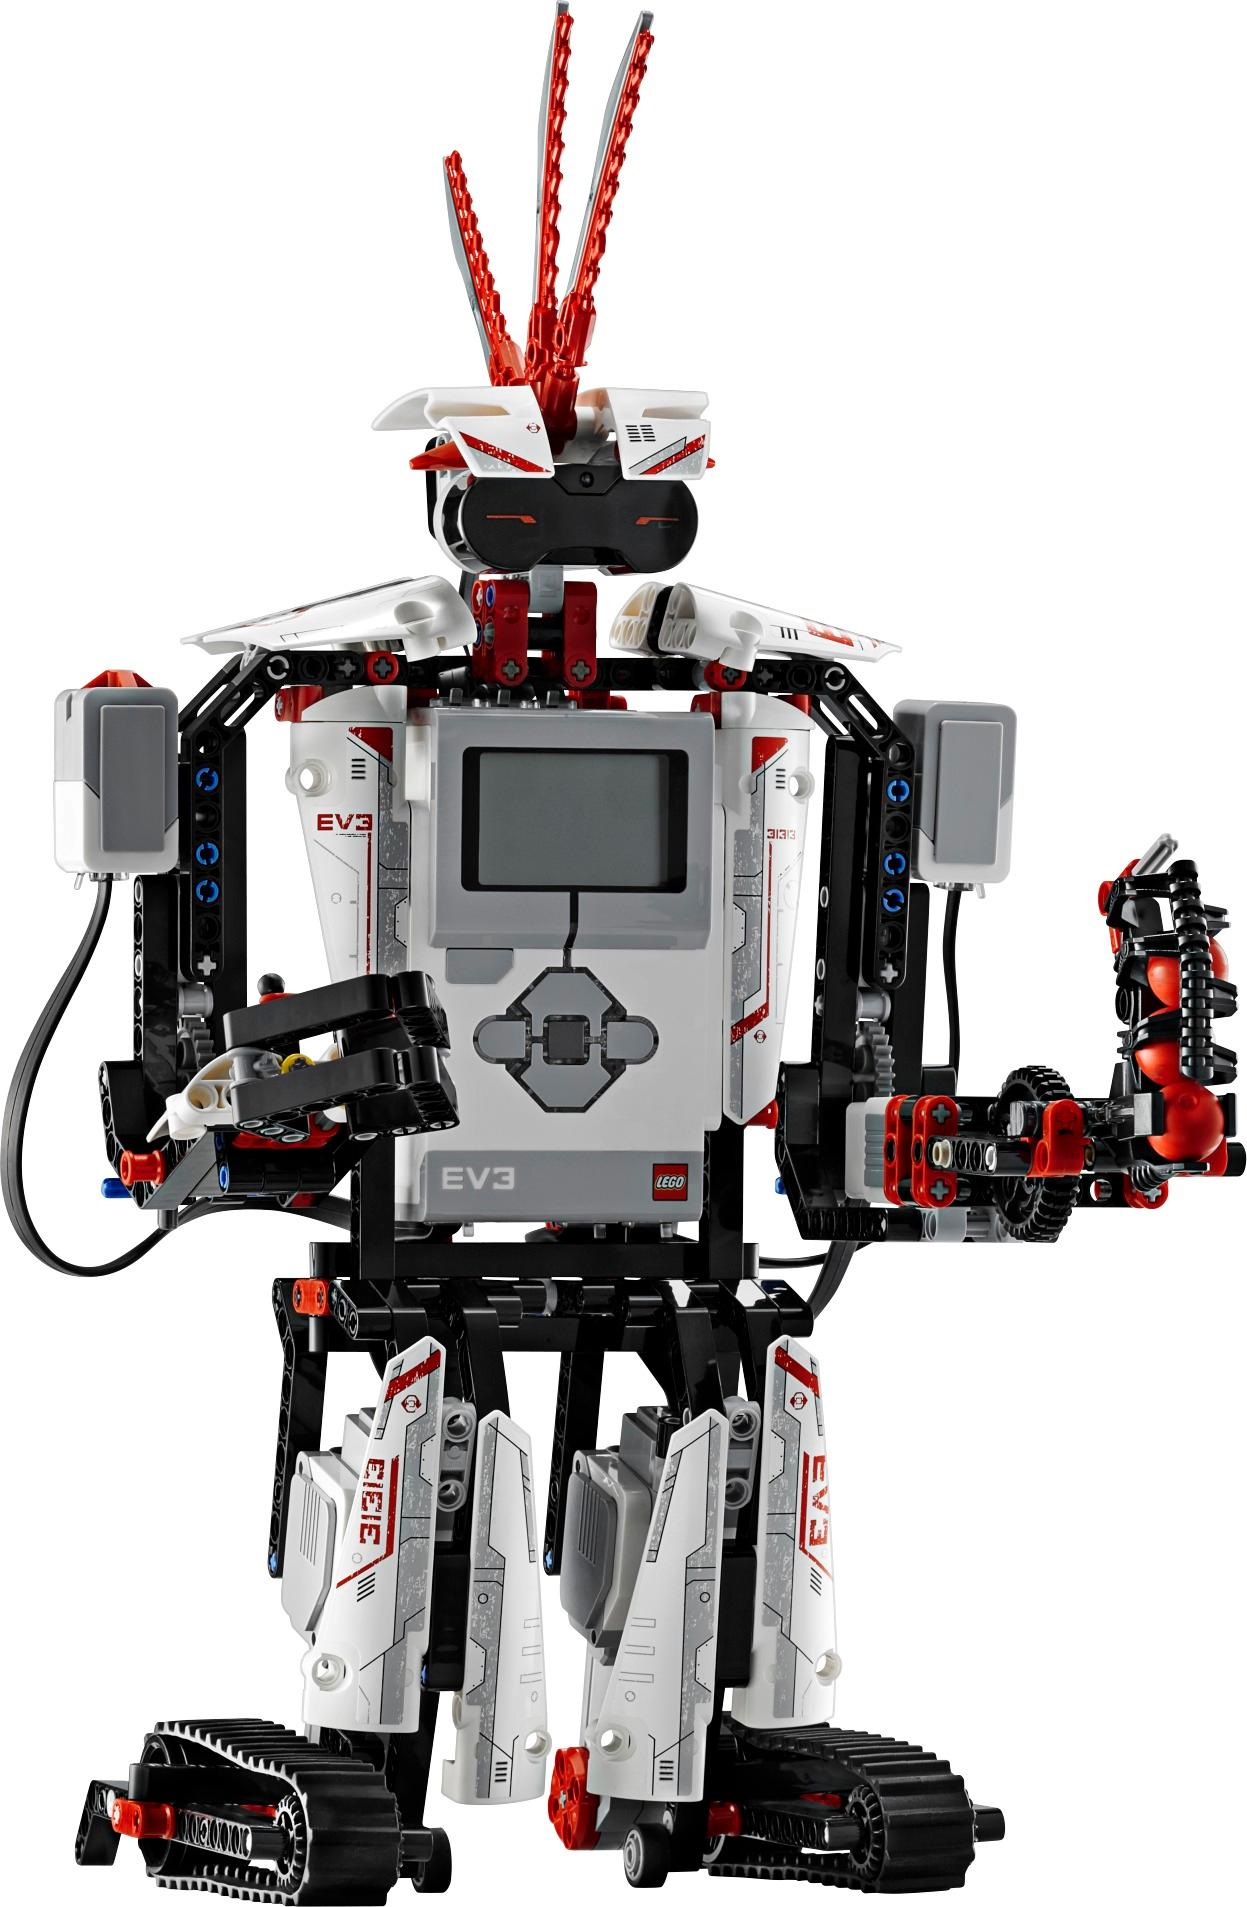 LEGO Mindstorms EV3 31313 -